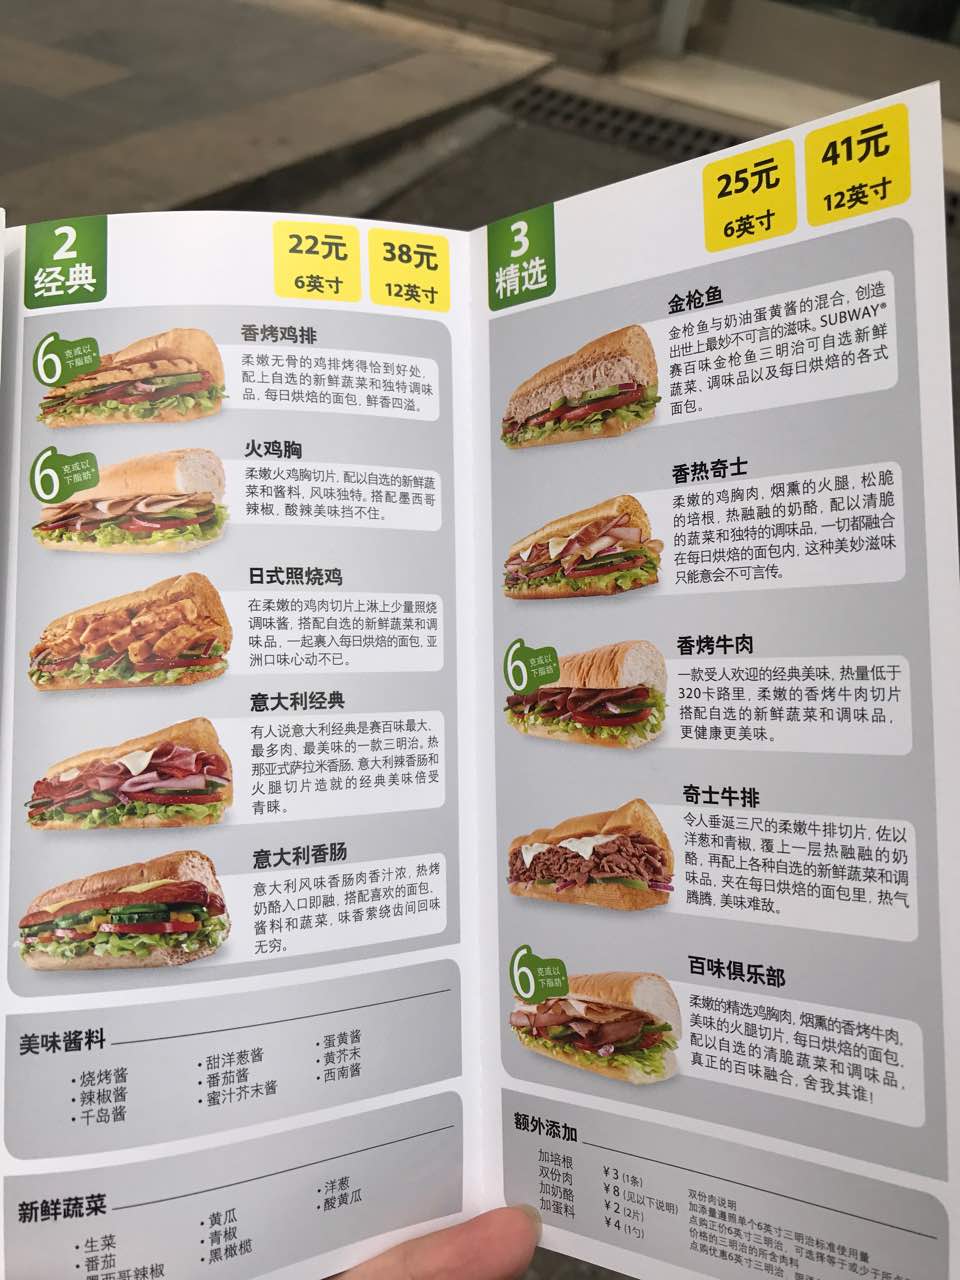 赛百味菜单价格表图片